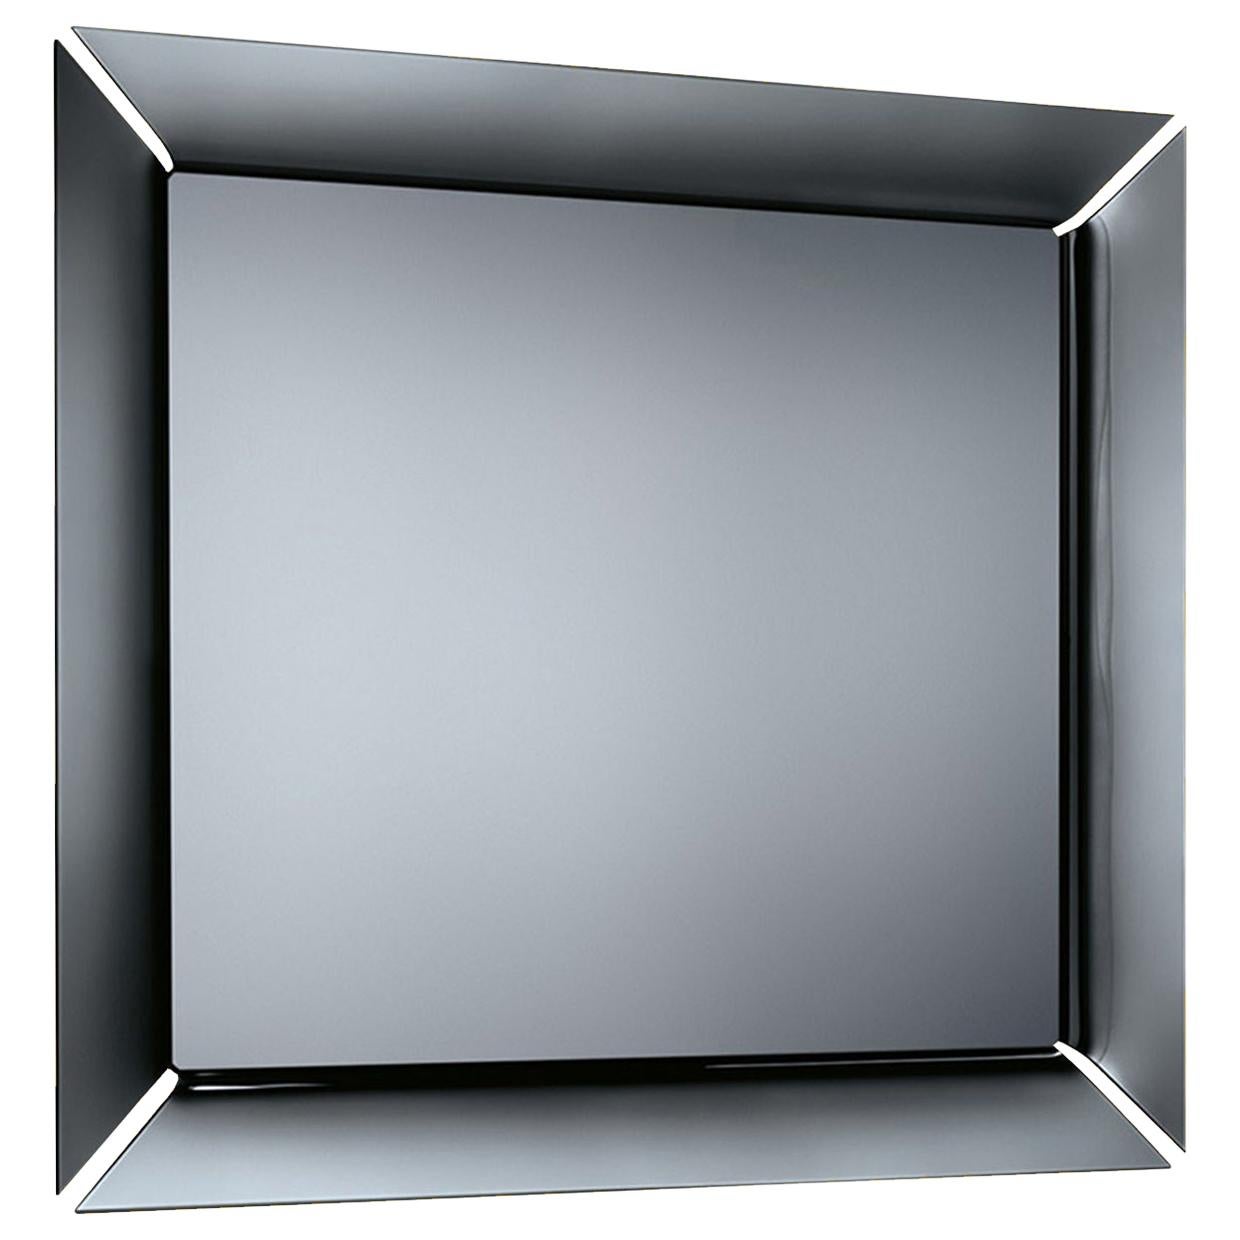 Fiam Caadre 610, freistehender Spiegel aus geschwungenem Glas, von Philippe Starck